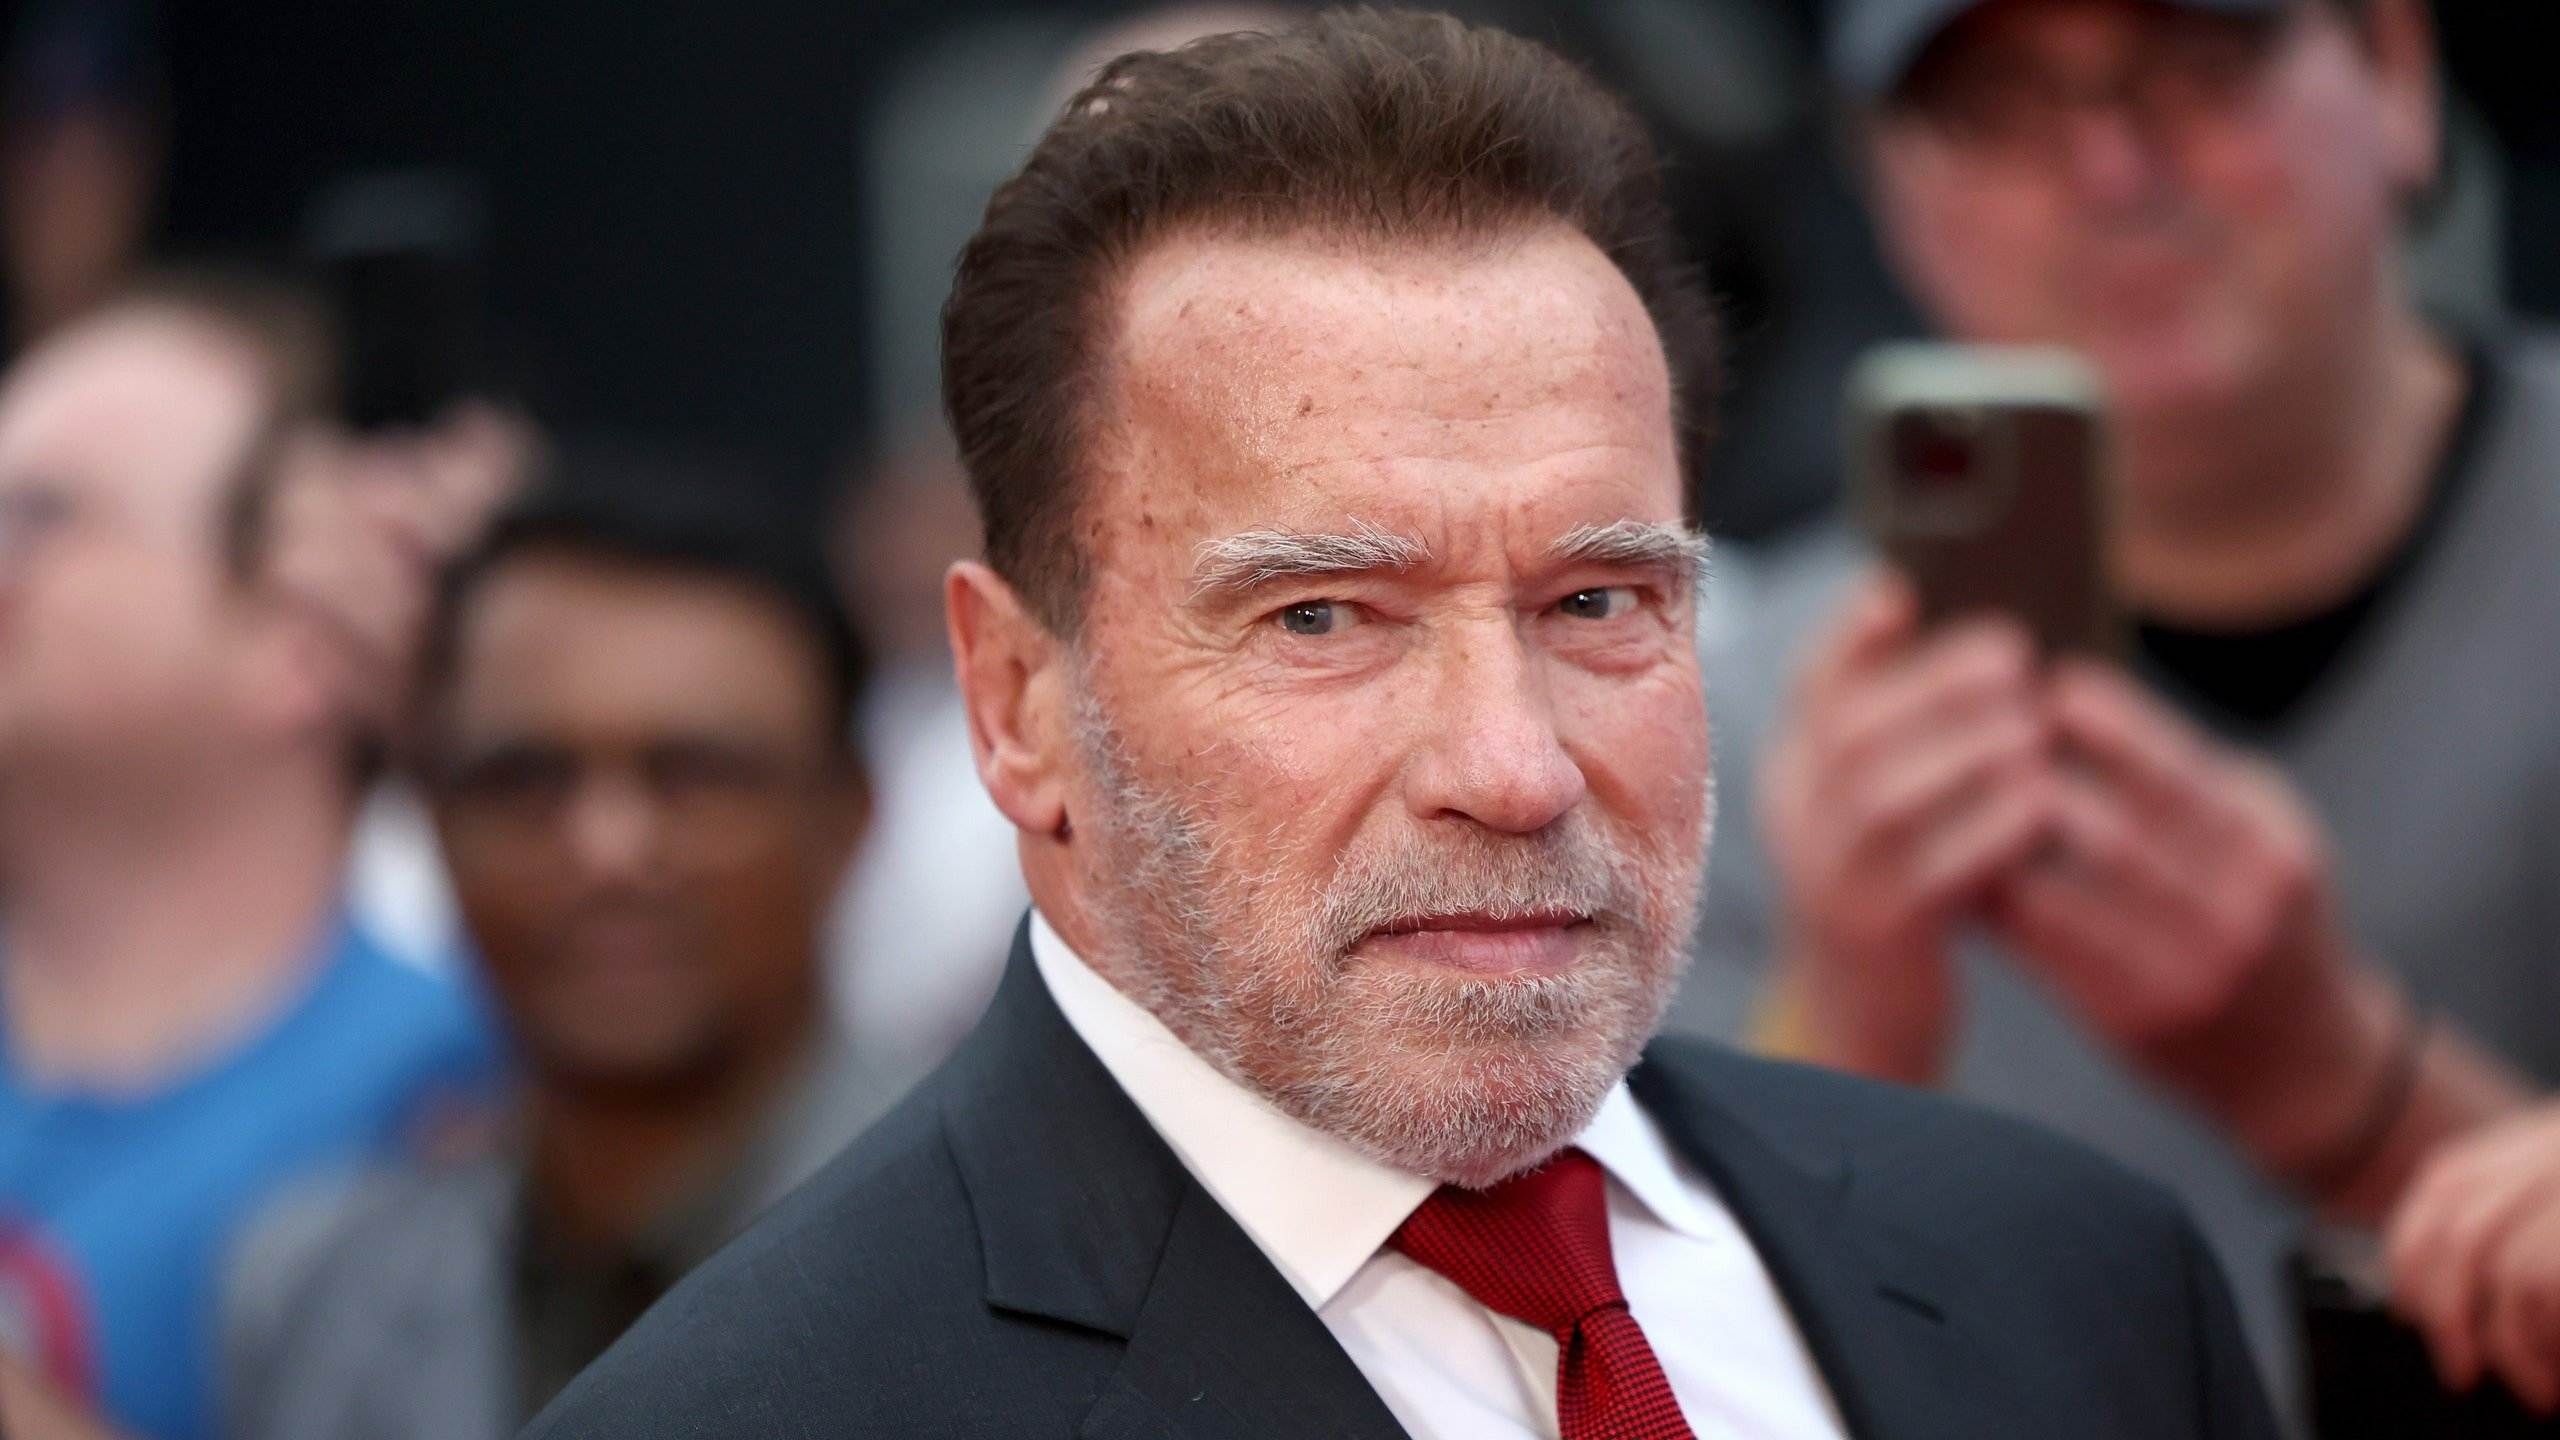 El hijo de Arnold Schwarzenegger que no quiere llevar su apellido